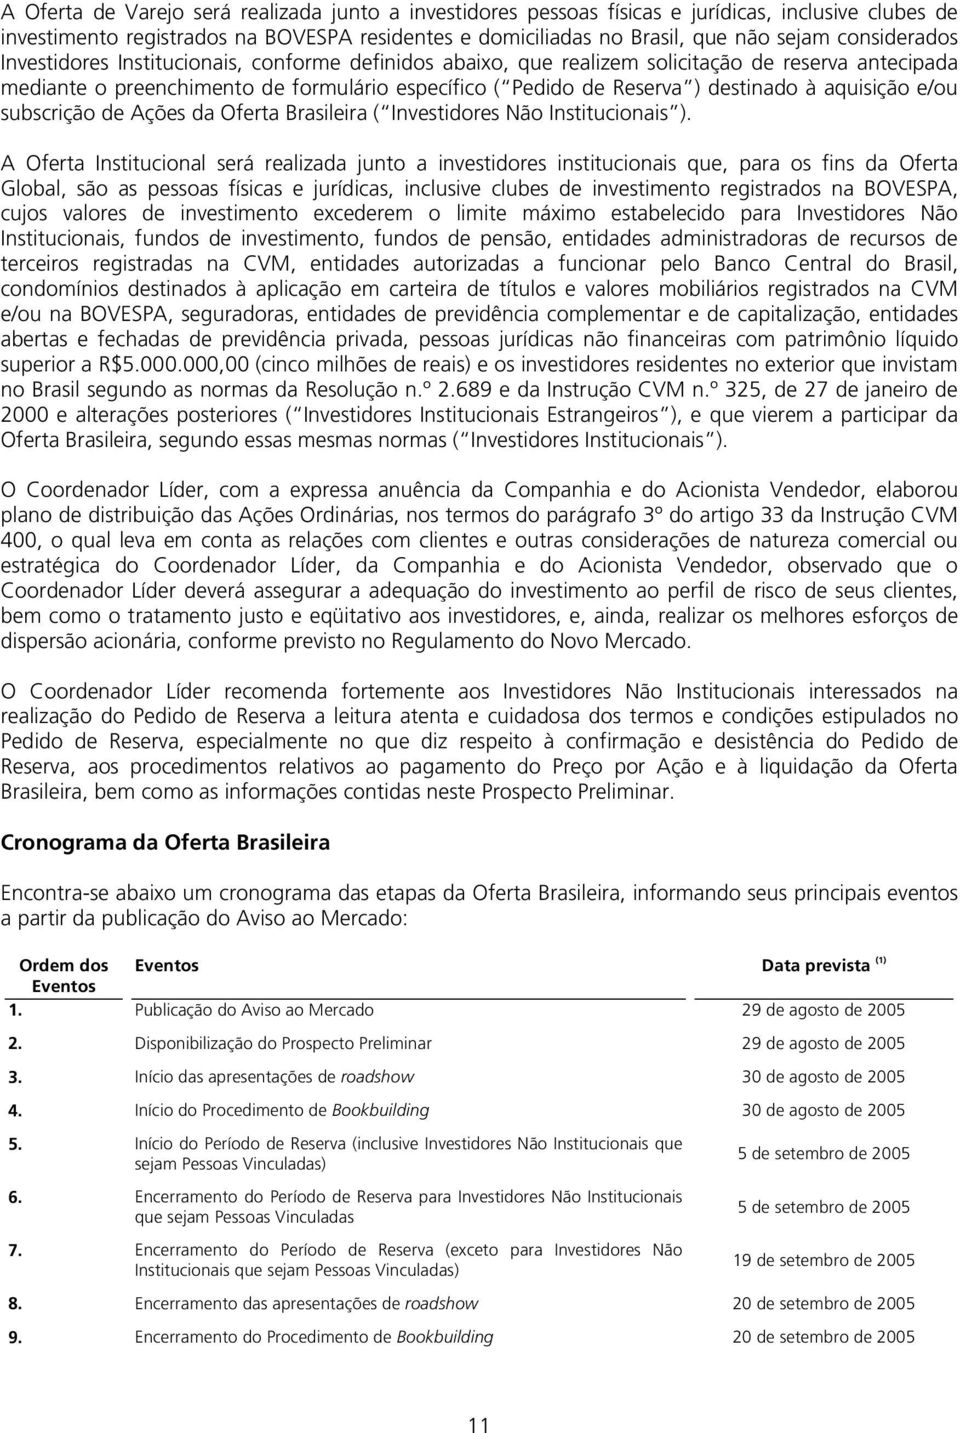 aquisição e/ou subscrição de Ações da Oferta Brasileira ( Investidores Não Institucionais ).